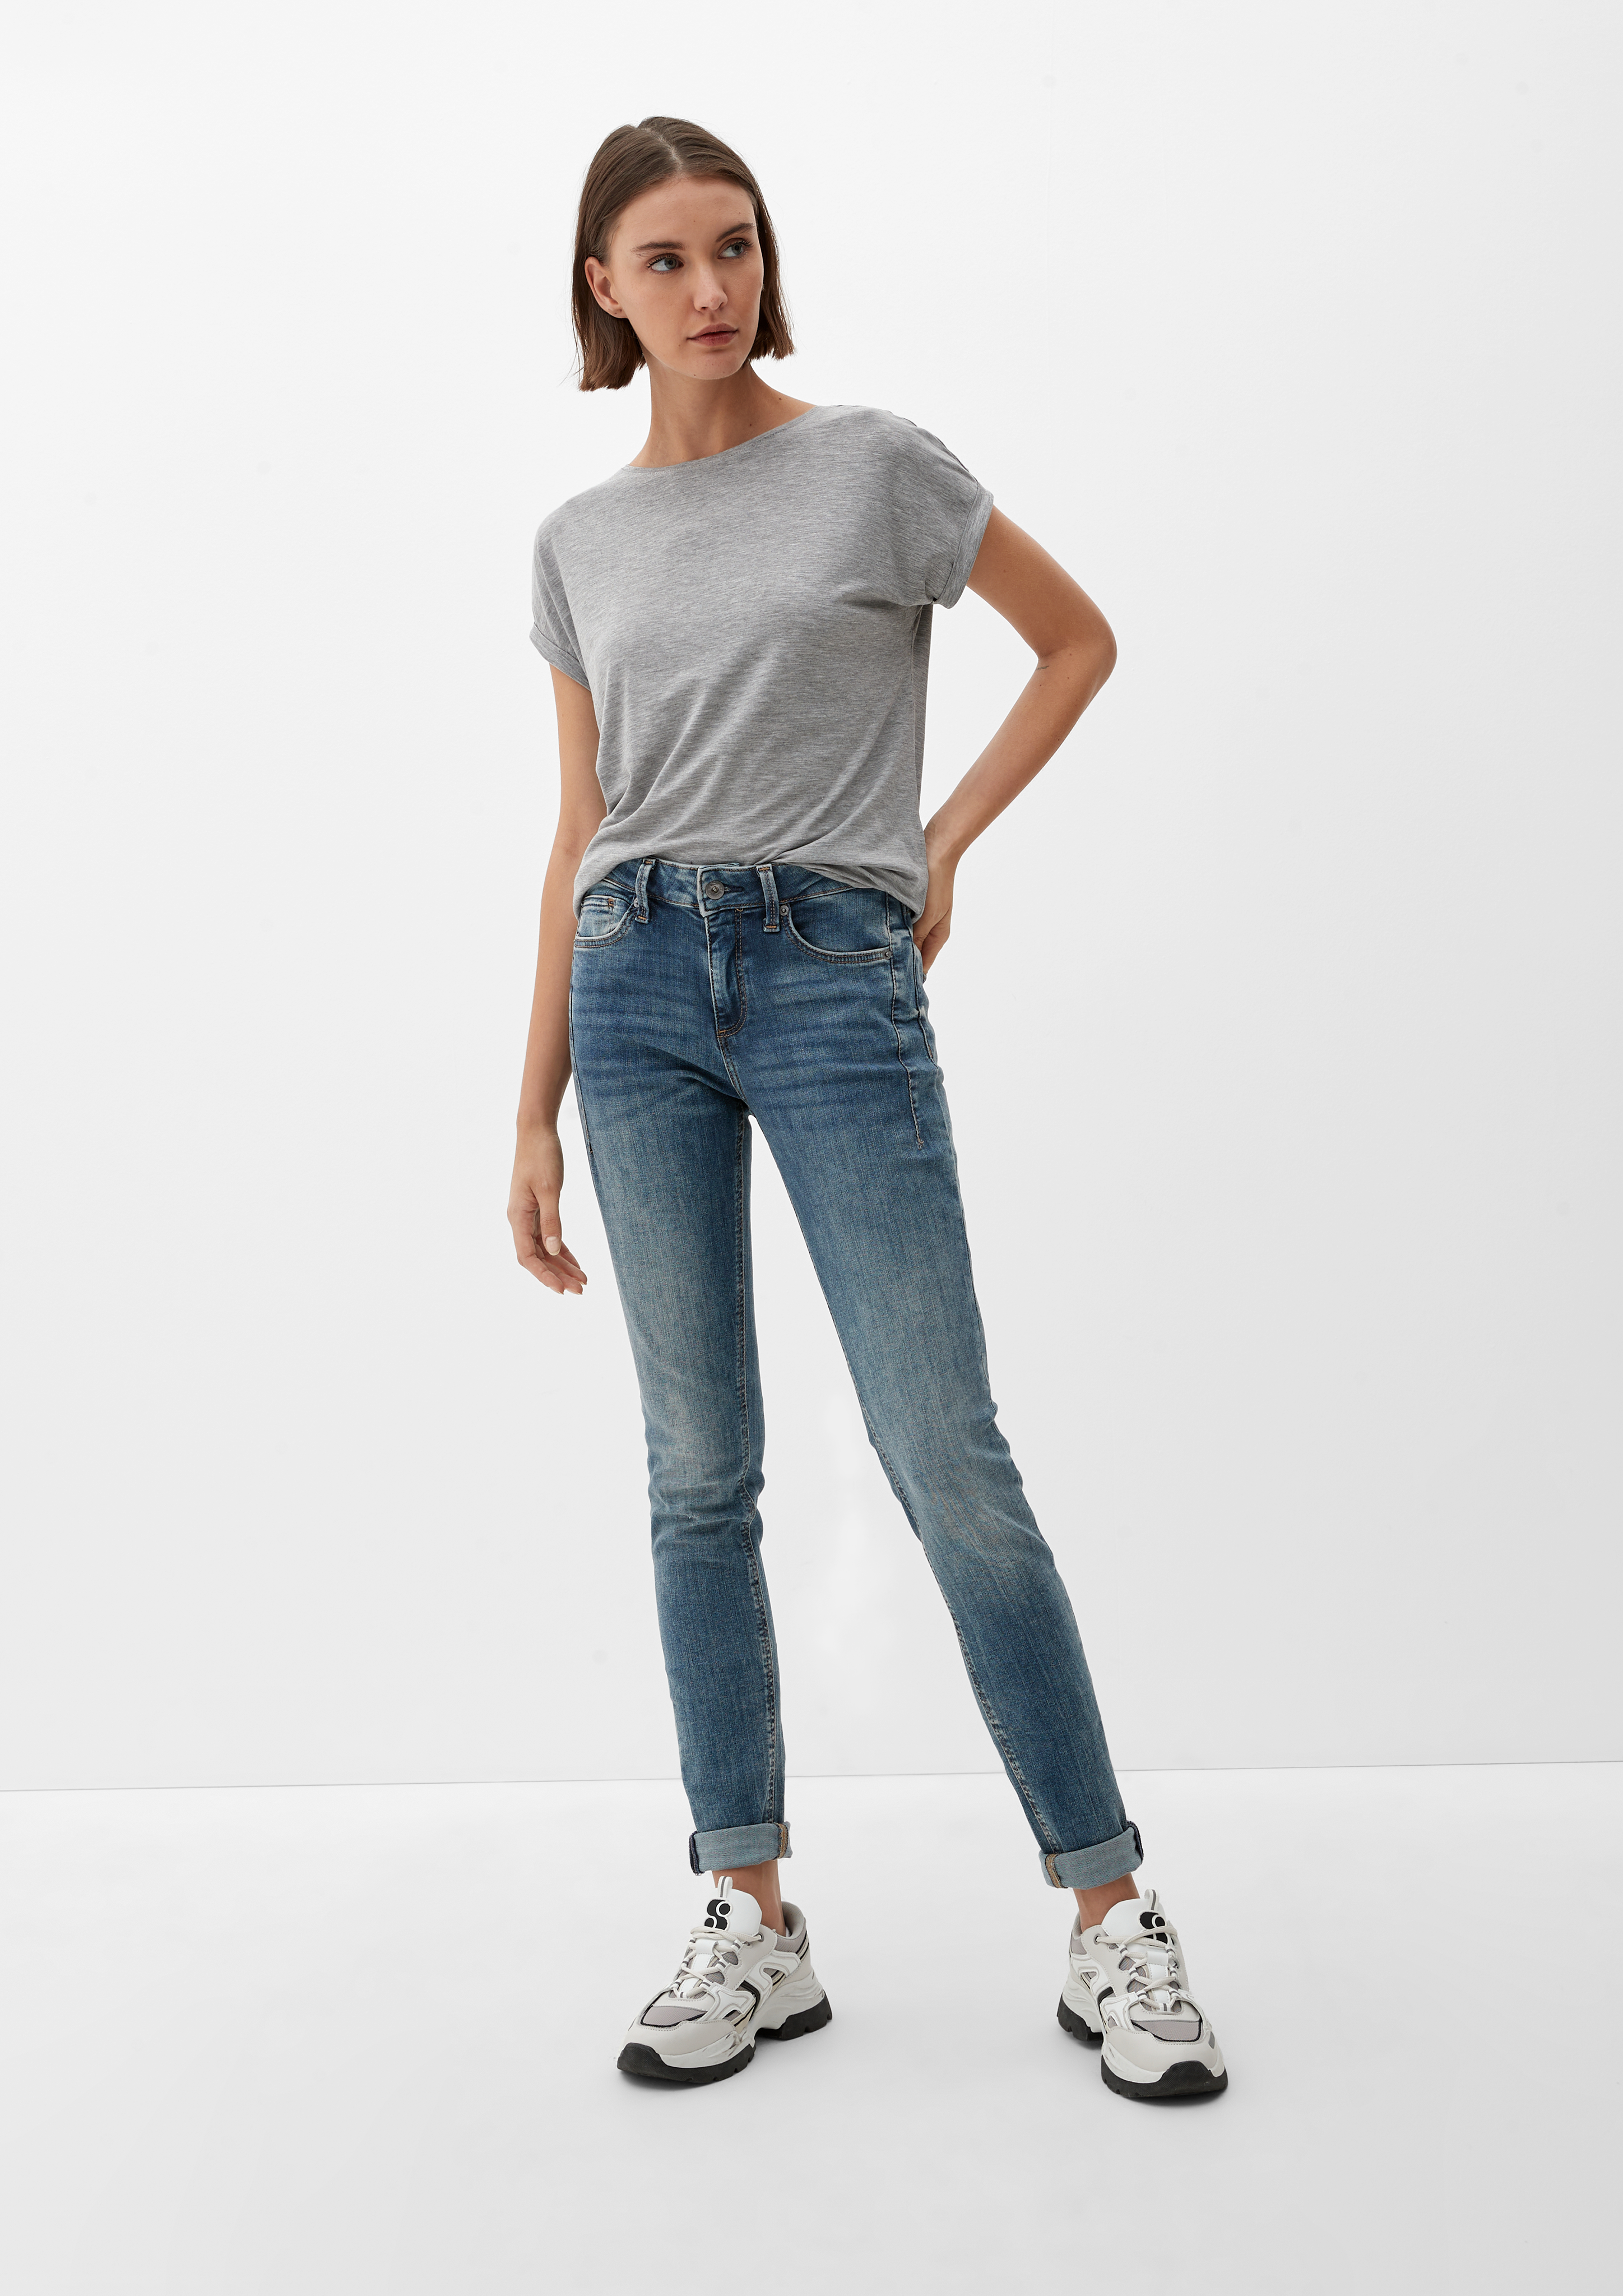 Jeans Sadie / Skinny Fit / Mid Rise / Skinny Leg - ozeanblau